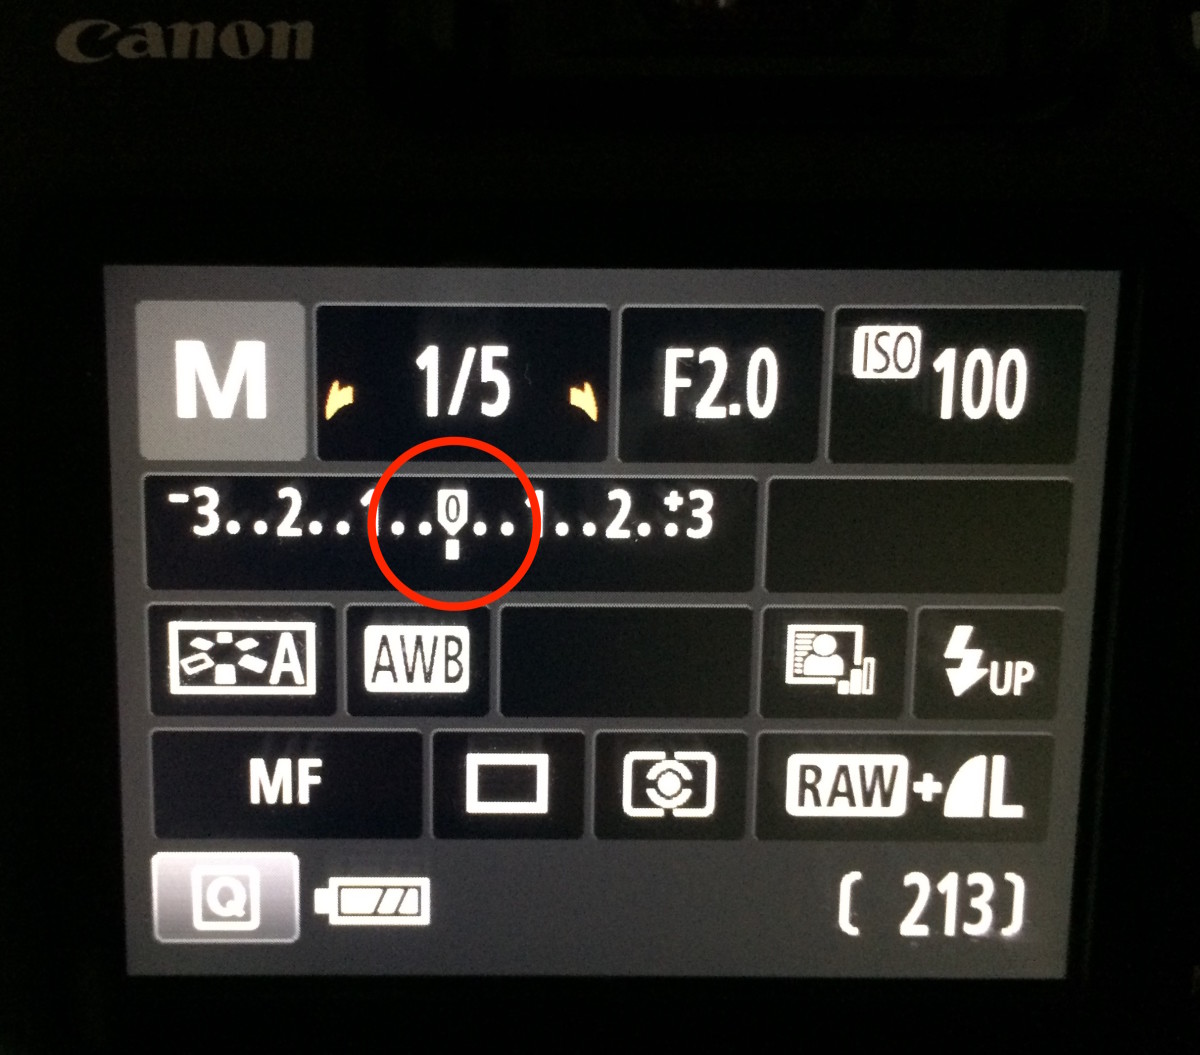 Meter showing correct exposure